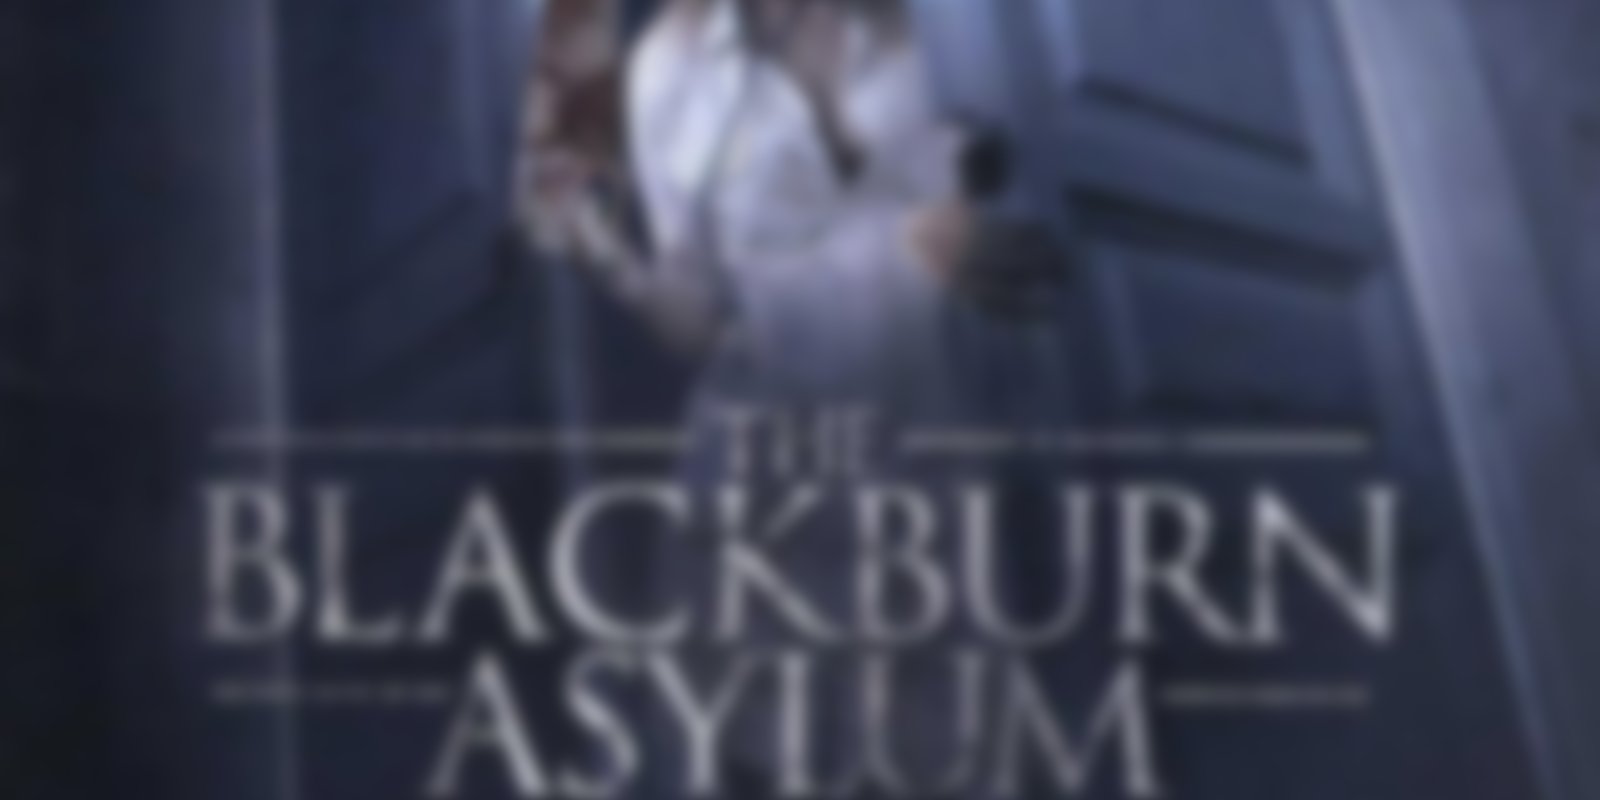 The Blackburn Asylum